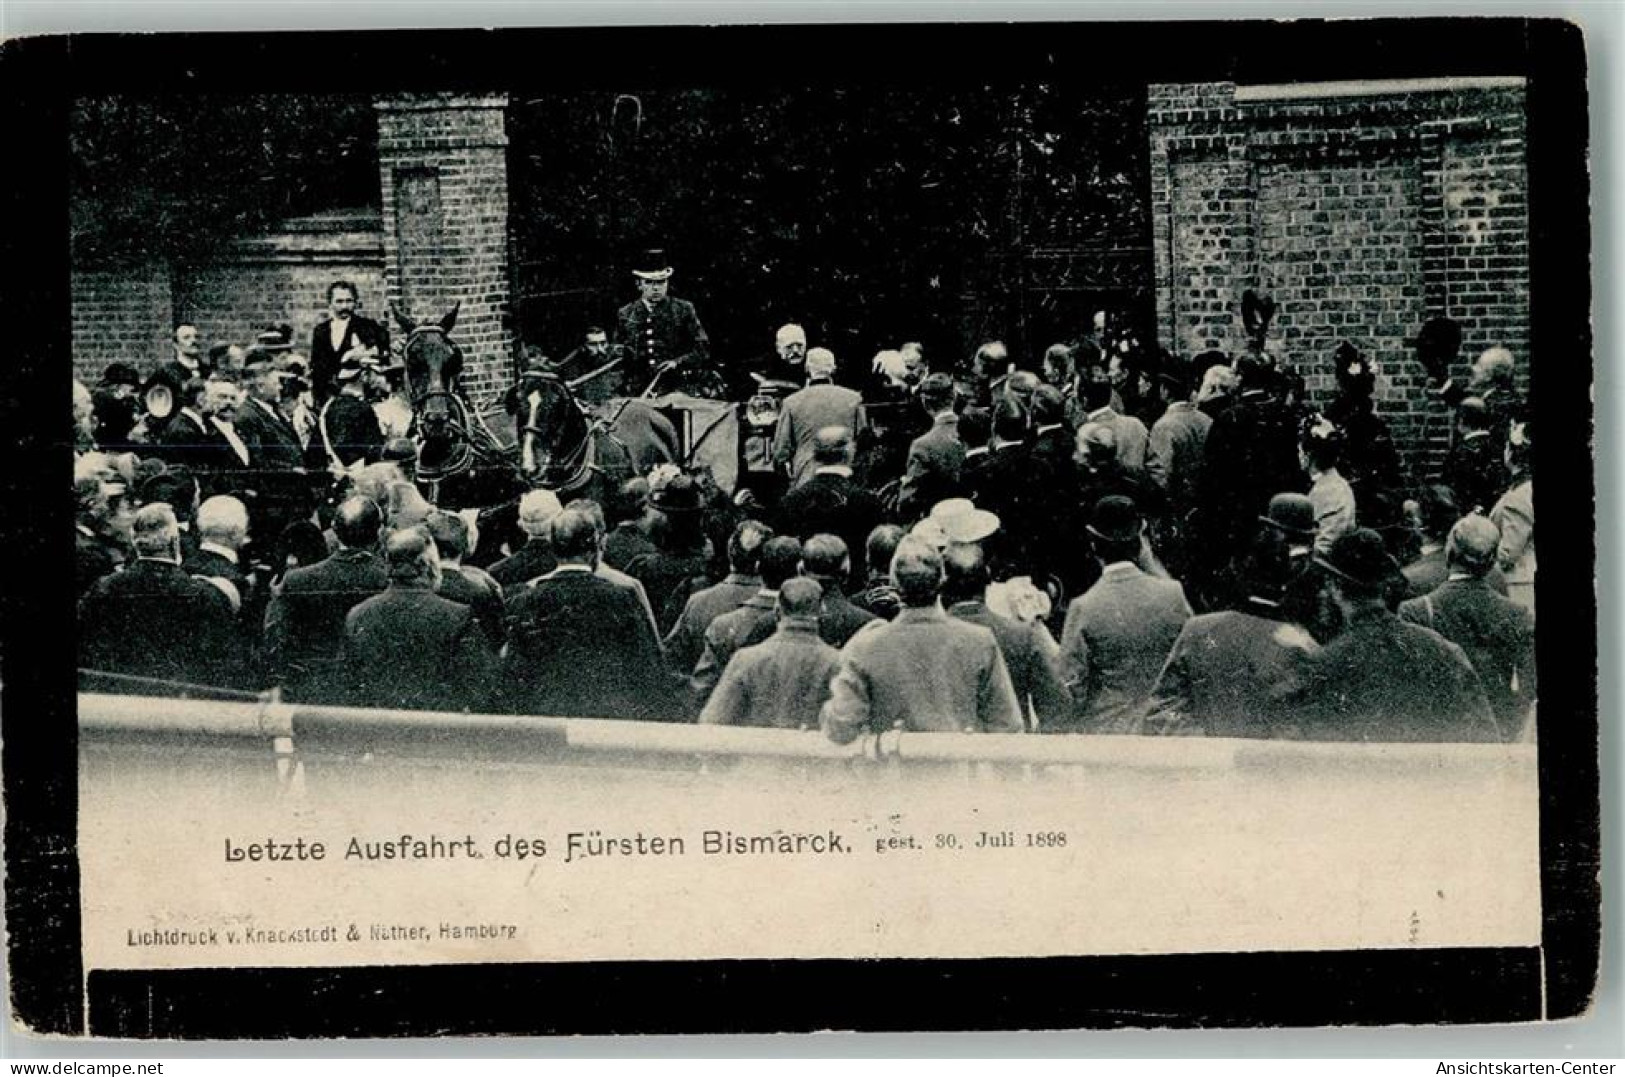 12056107 - Adel Bayern Trauerkarte - Letzte Ausfahrt - Hombres Políticos Y Militares